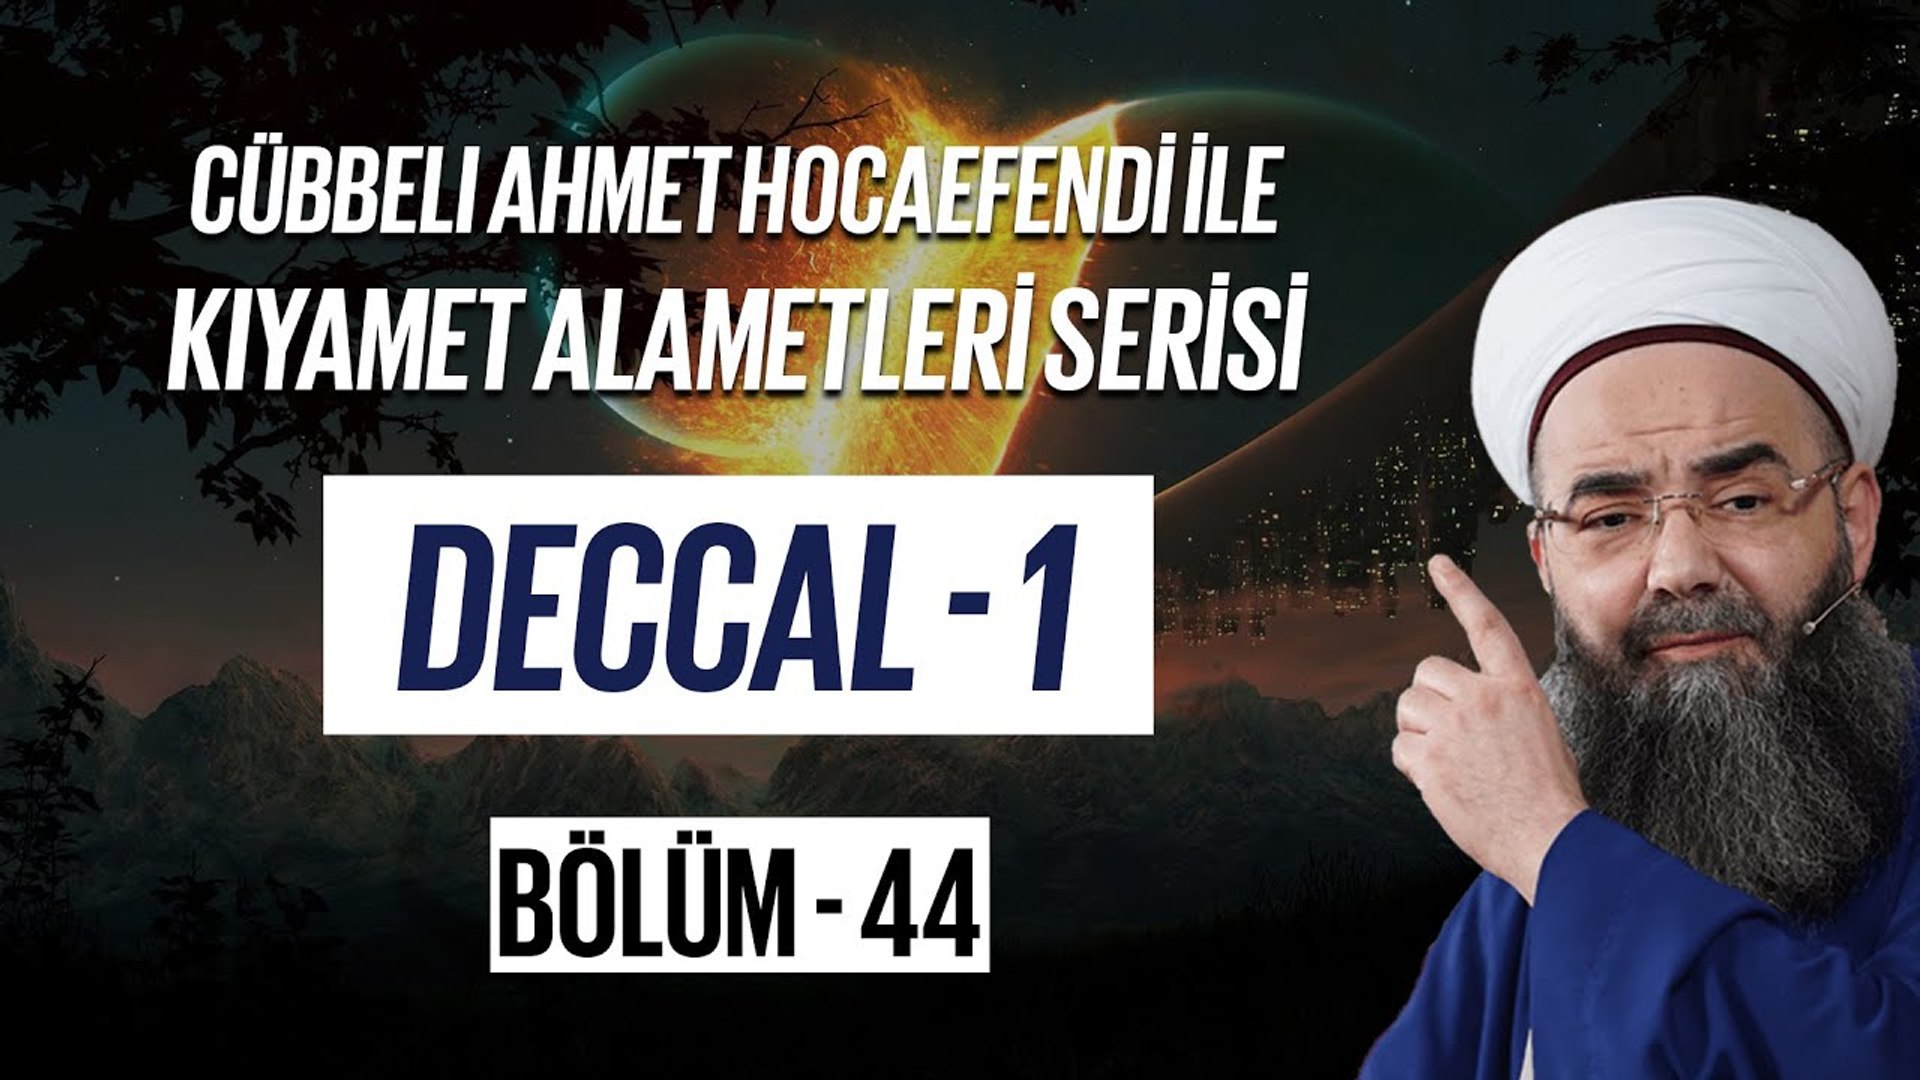 Cübbeli Ahmet Hocaefendi ile Kıyamet Alametleri 44. Ders (Deccal 1. Bölüm)  7 Aralık 2006 - Dailymotion Video